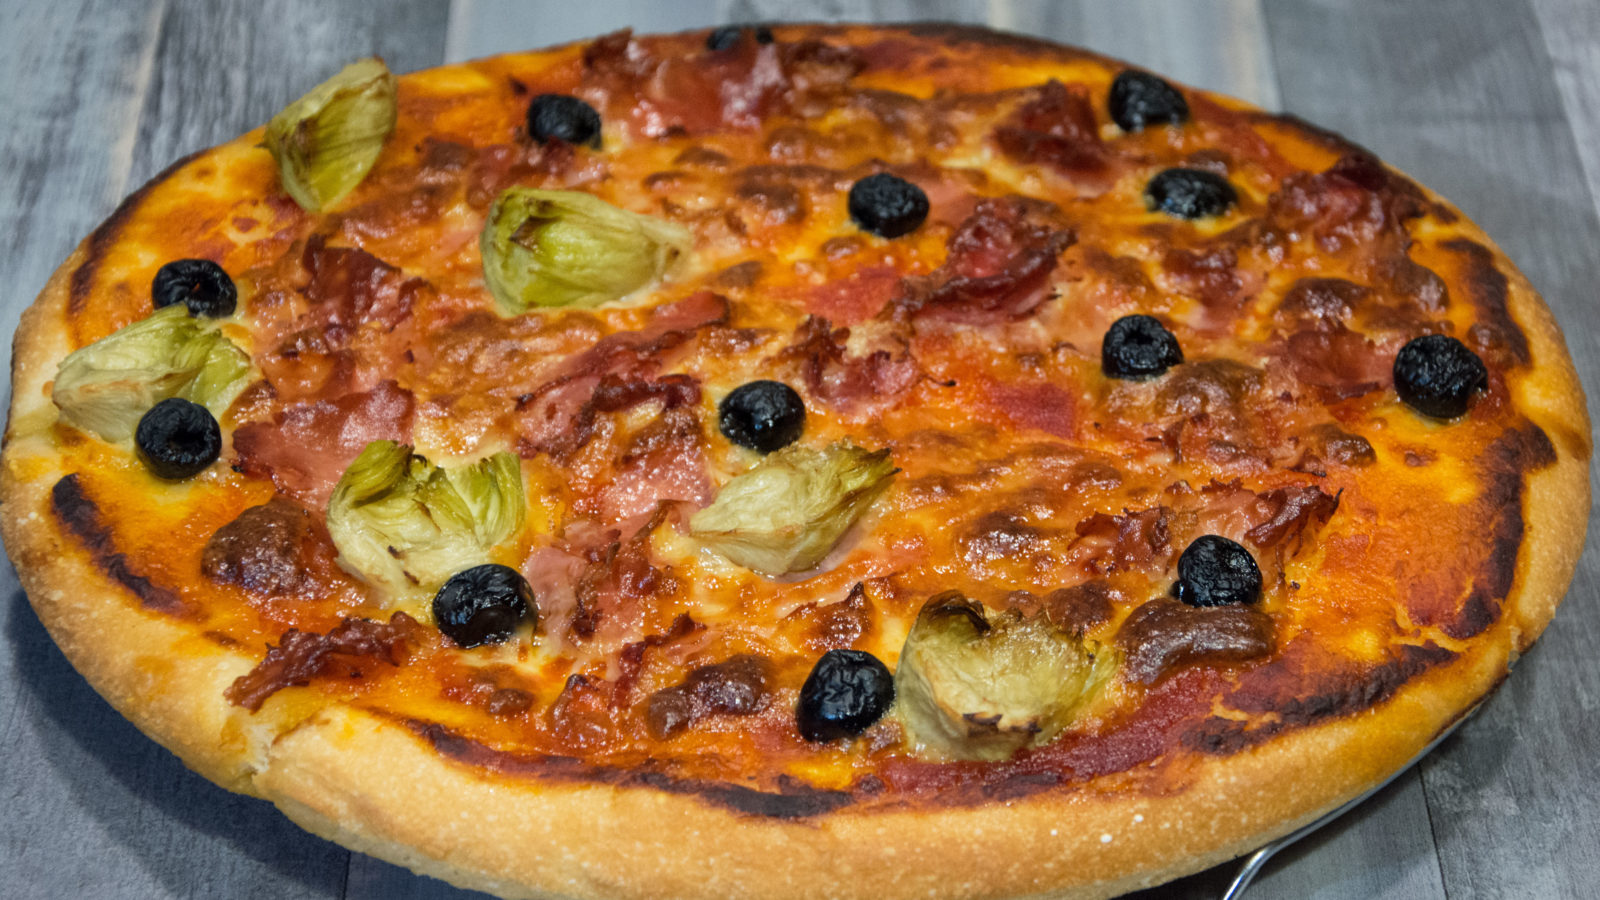 Pizza Senza Glutine In Teglia Perfetta! Alta, Croccante Fuori e Morbida  Dentro, si Impasta in 5 Minuti con 3 gr di Lievito! - Ricette di Cucina